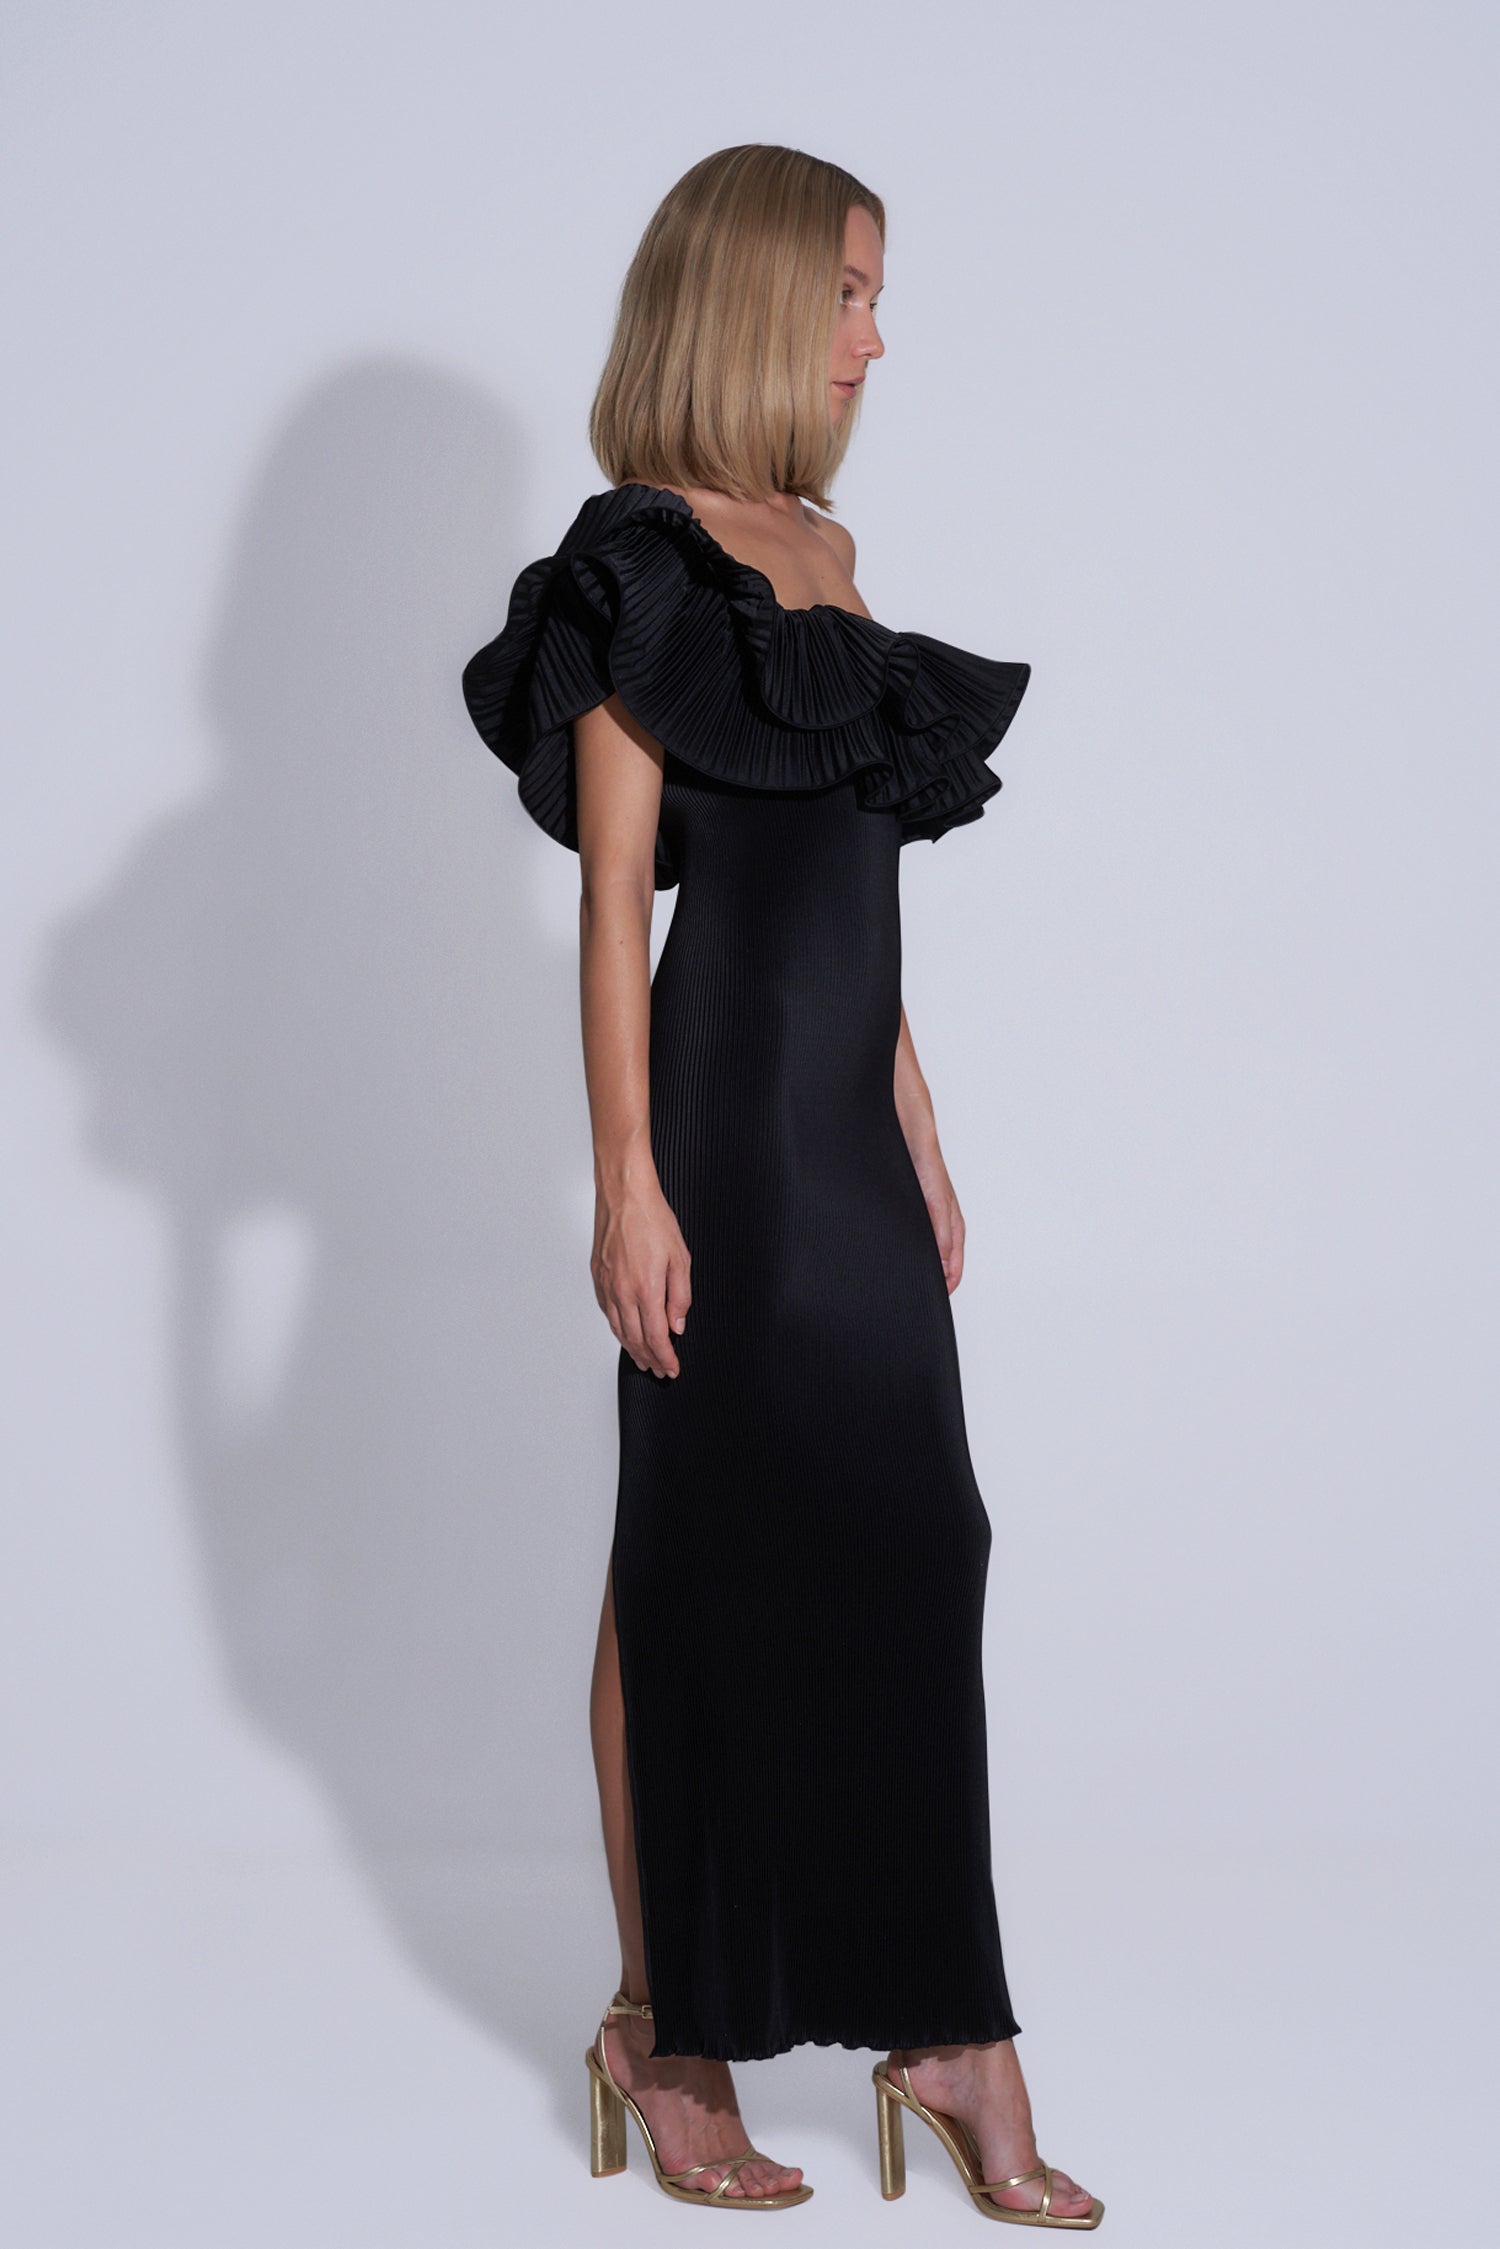 Premiere gown, noir